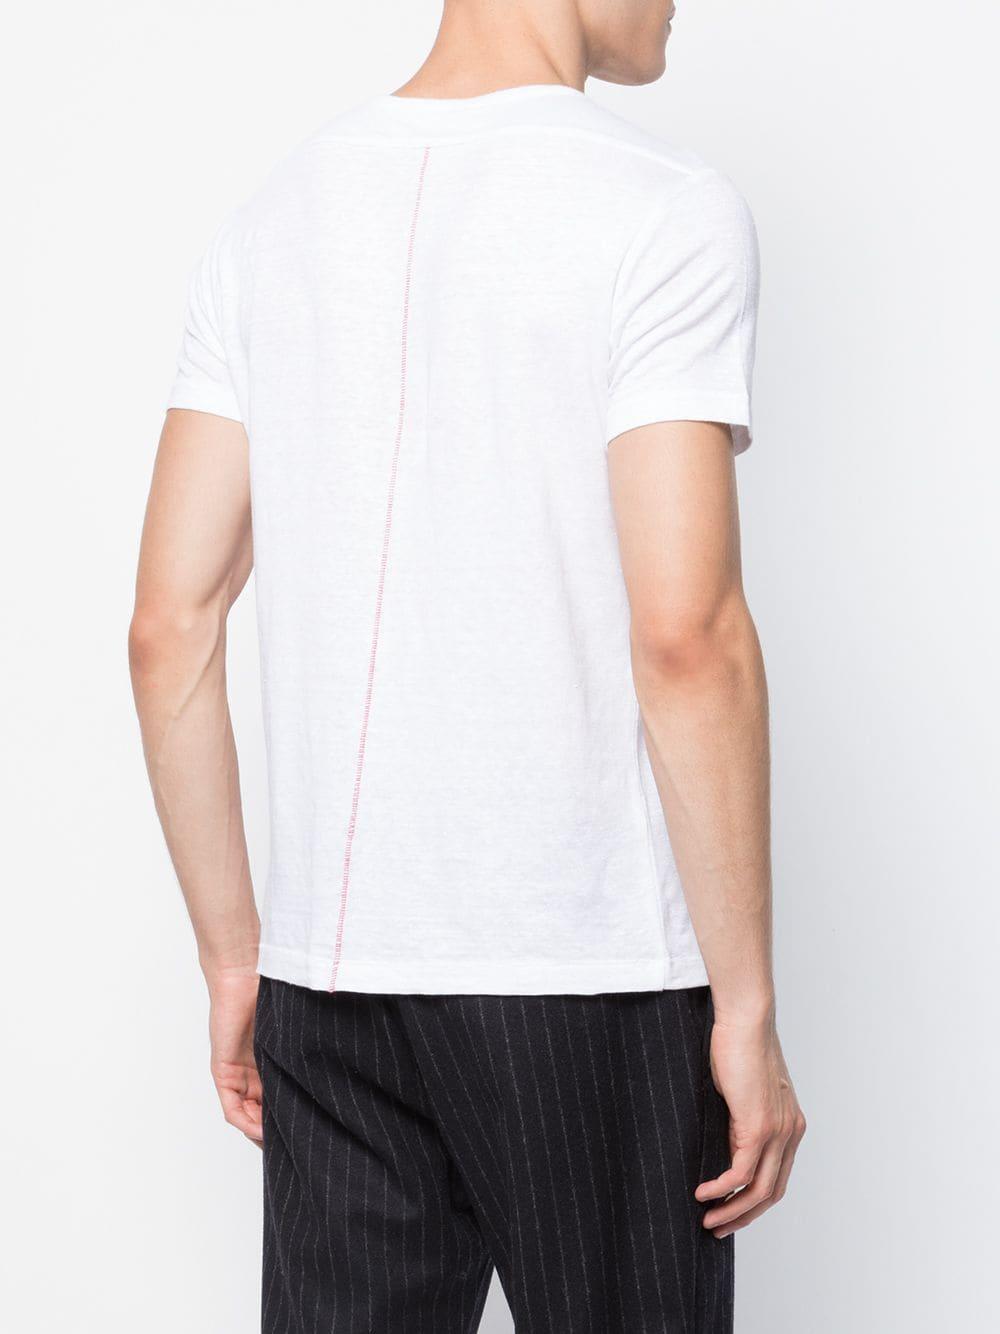 Homecore Linen Eole T-shirt in White for Men - Lyst